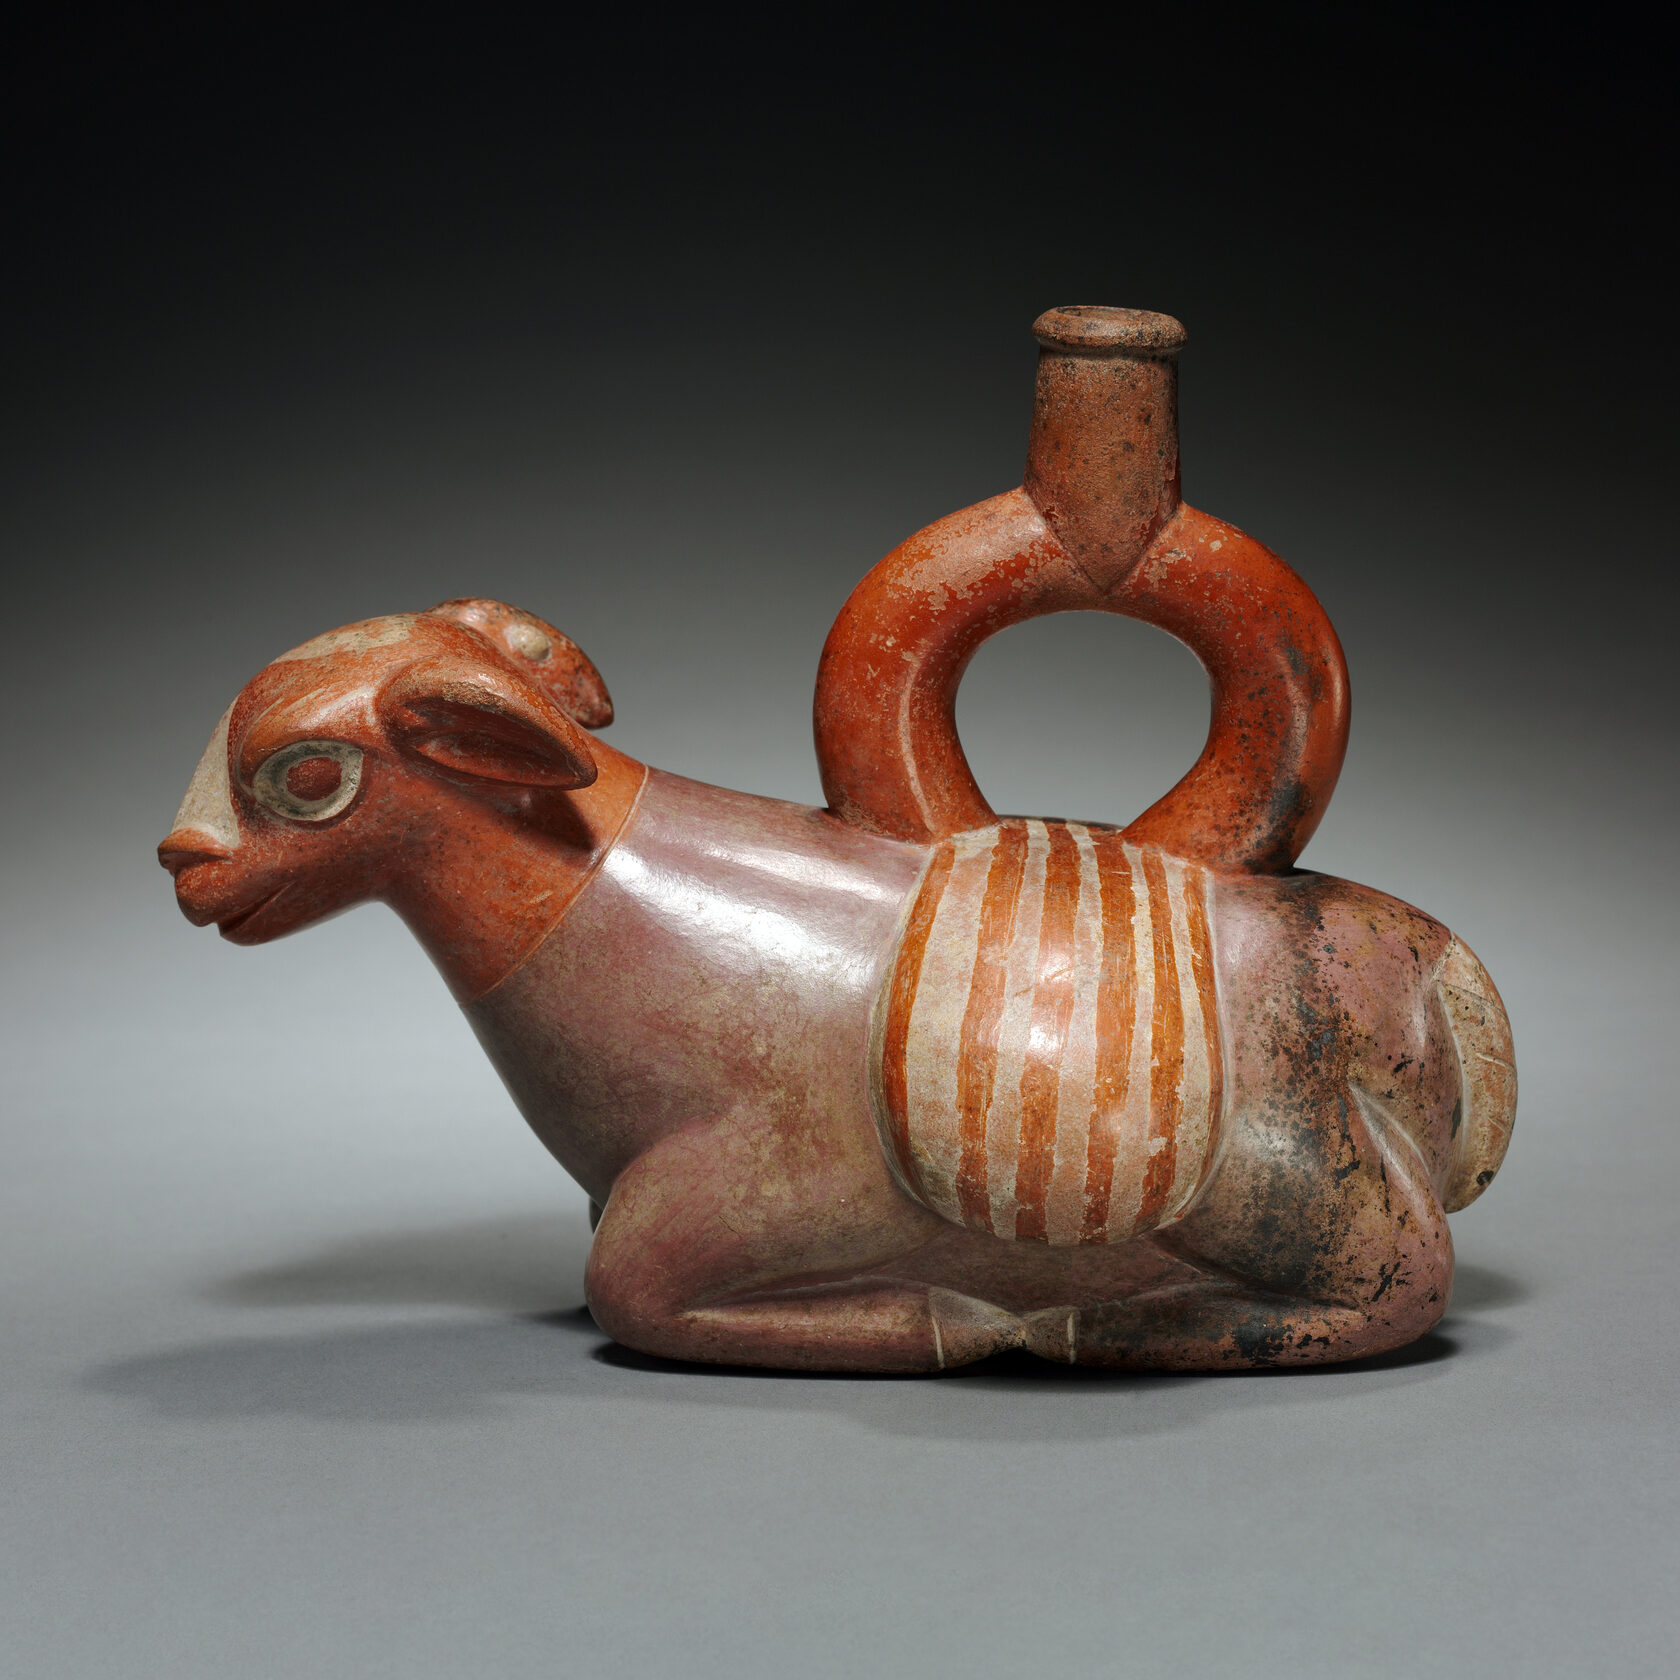 Сосуд в виде ламы. Моче, 200-550 гг. н.э. Коллекция Cleveland Museum of Art.